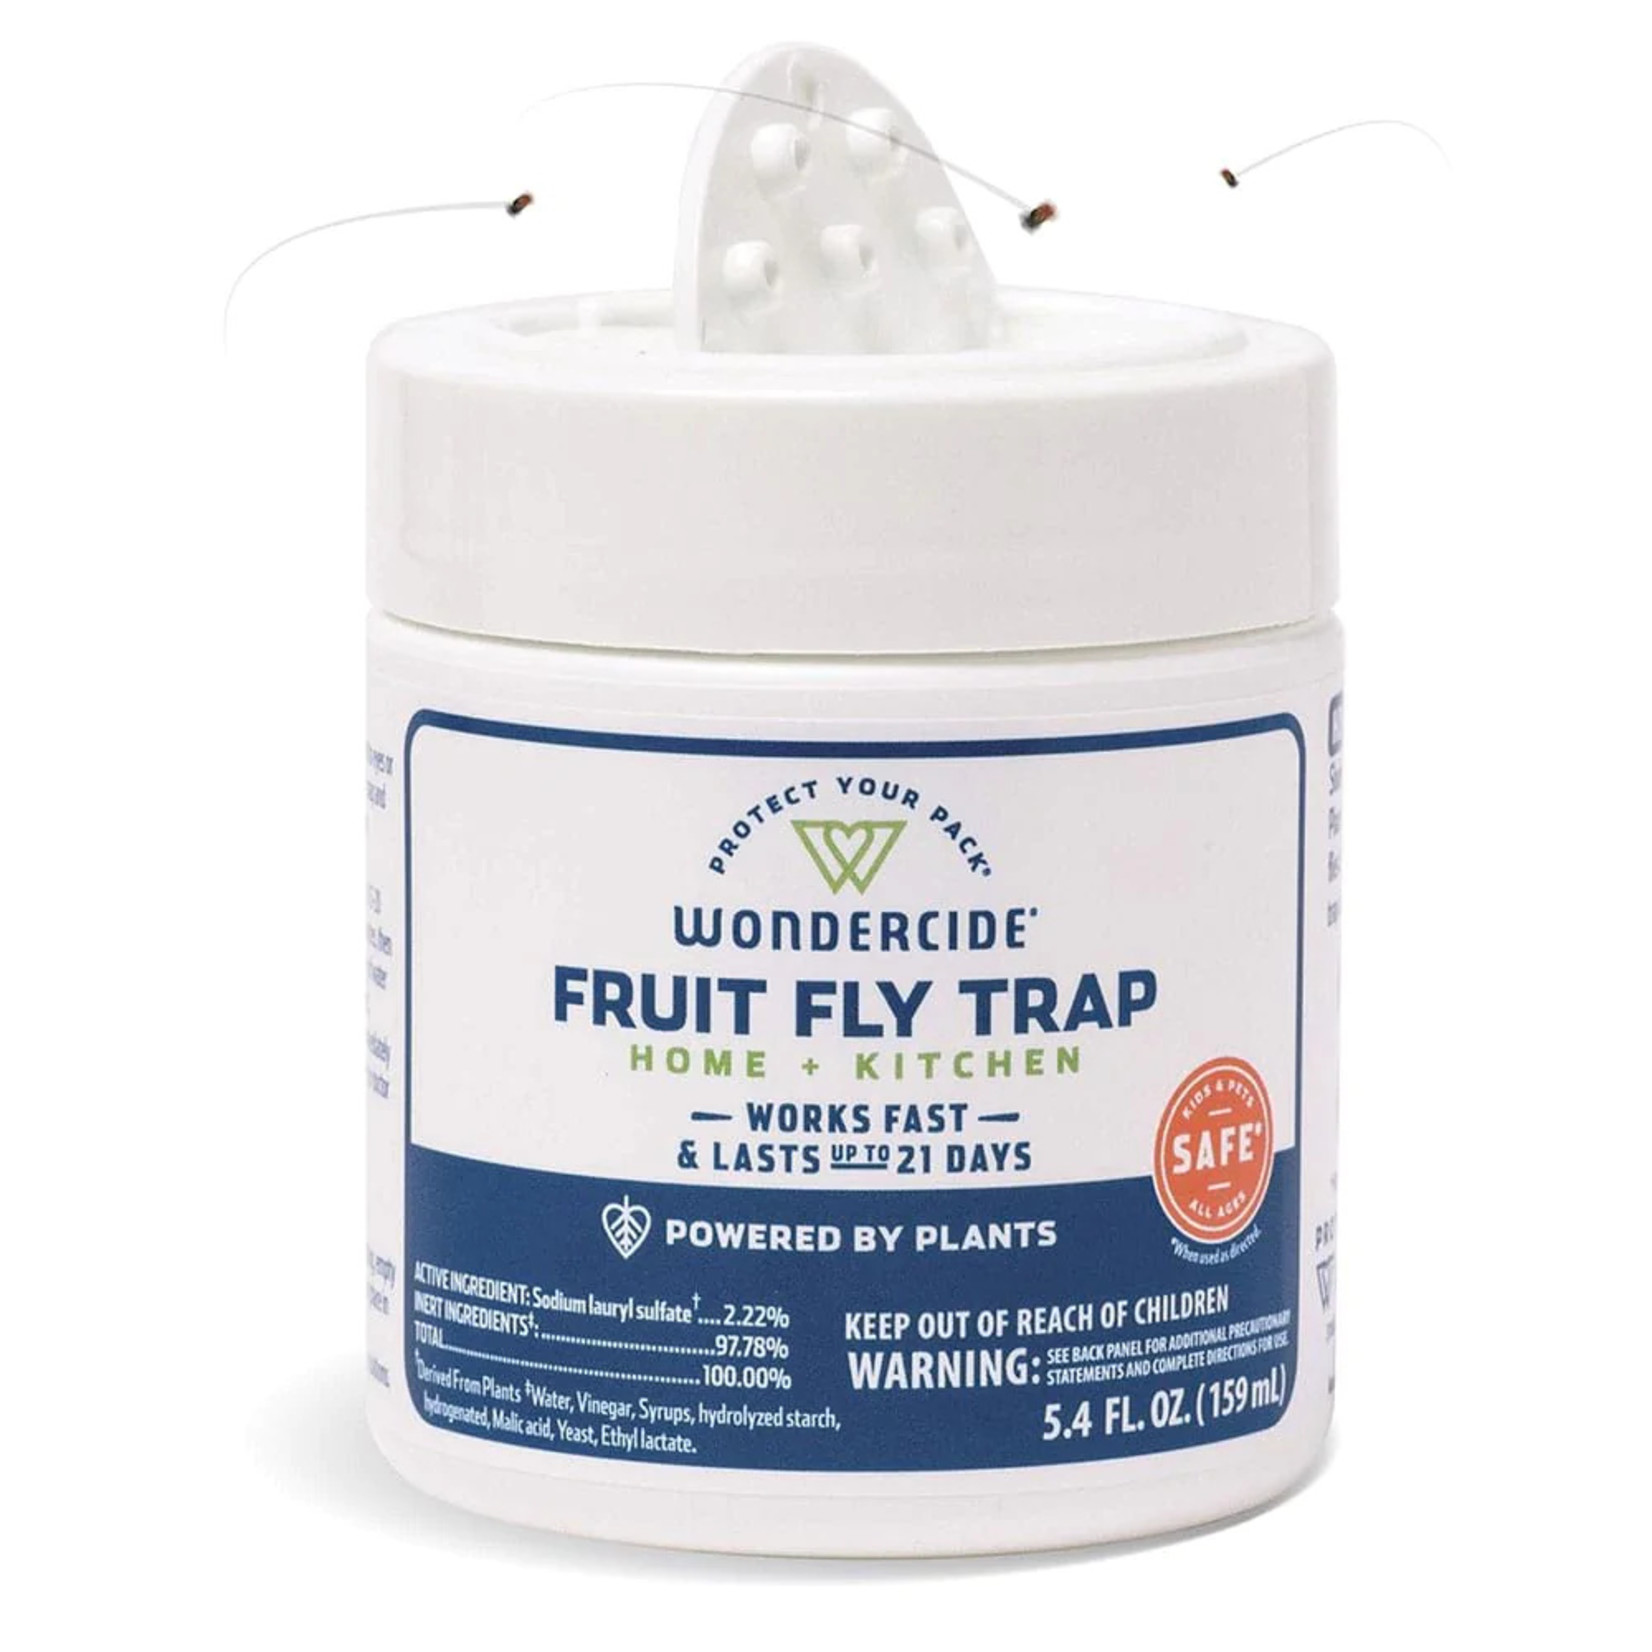 Wondercide Wondercide Fruit Fly Trap for Home + Kitchen